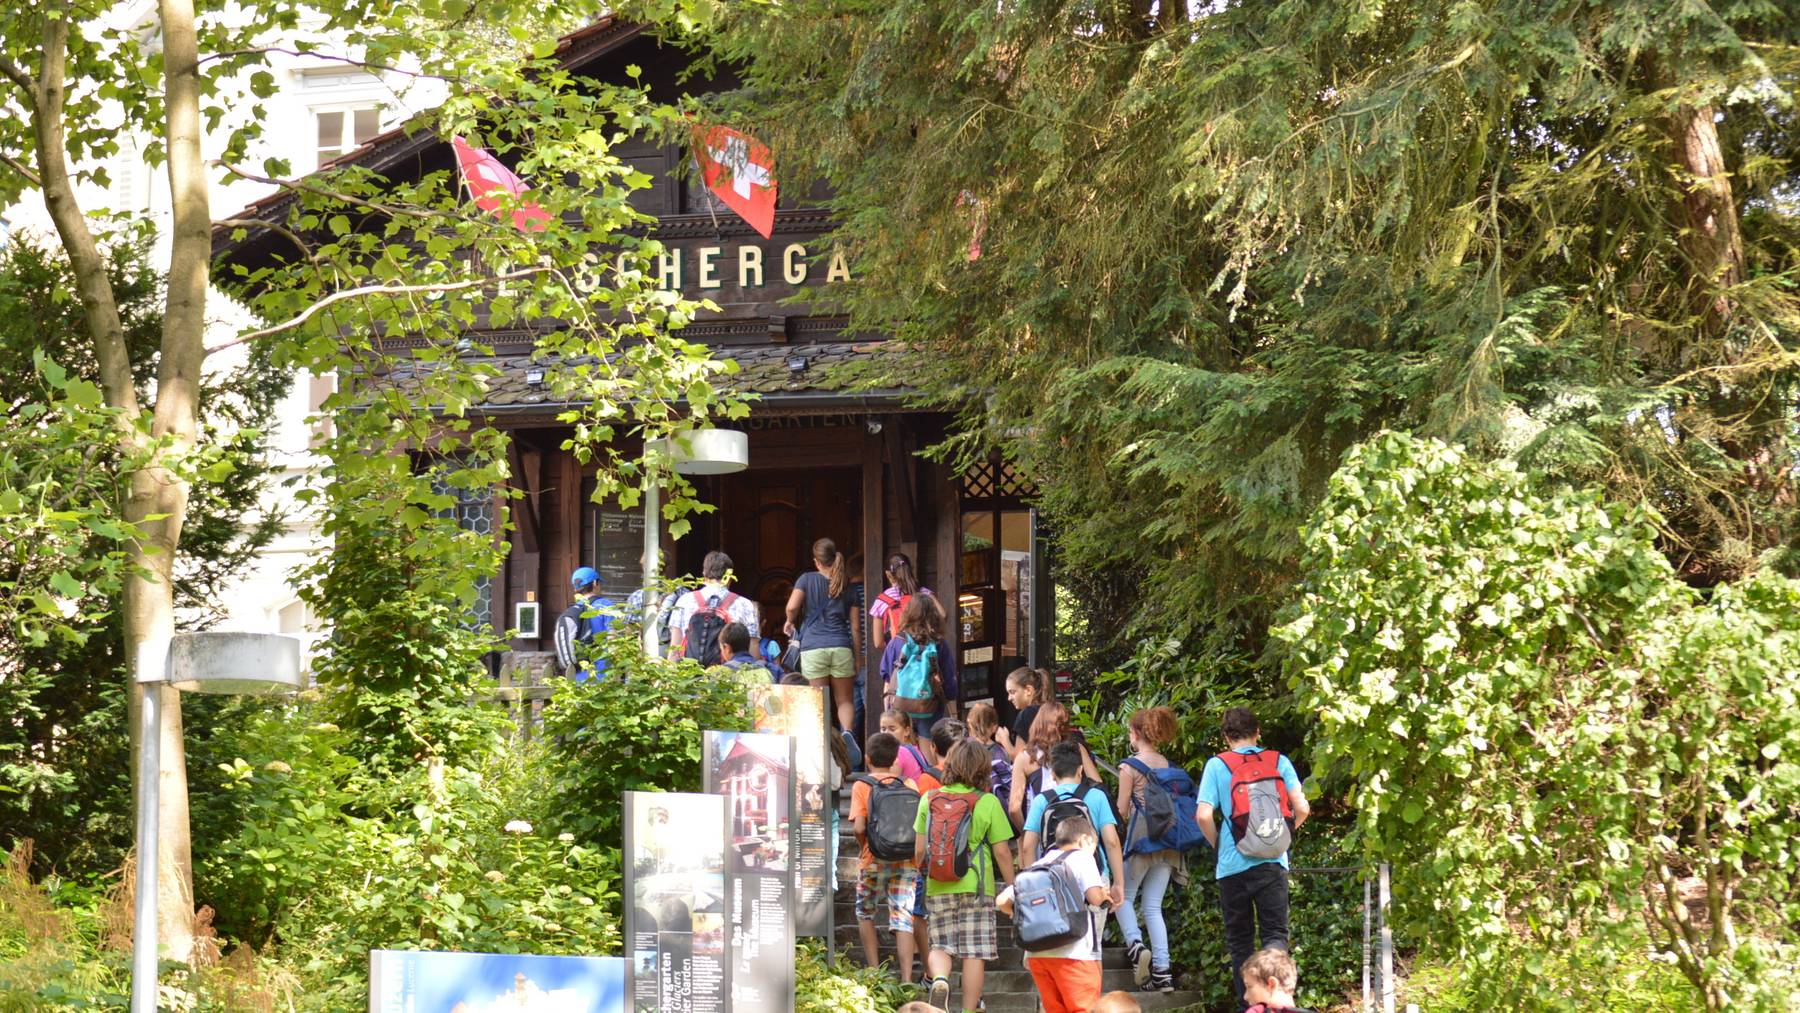 Schulreisekosten – Kanton Luzern springt ein